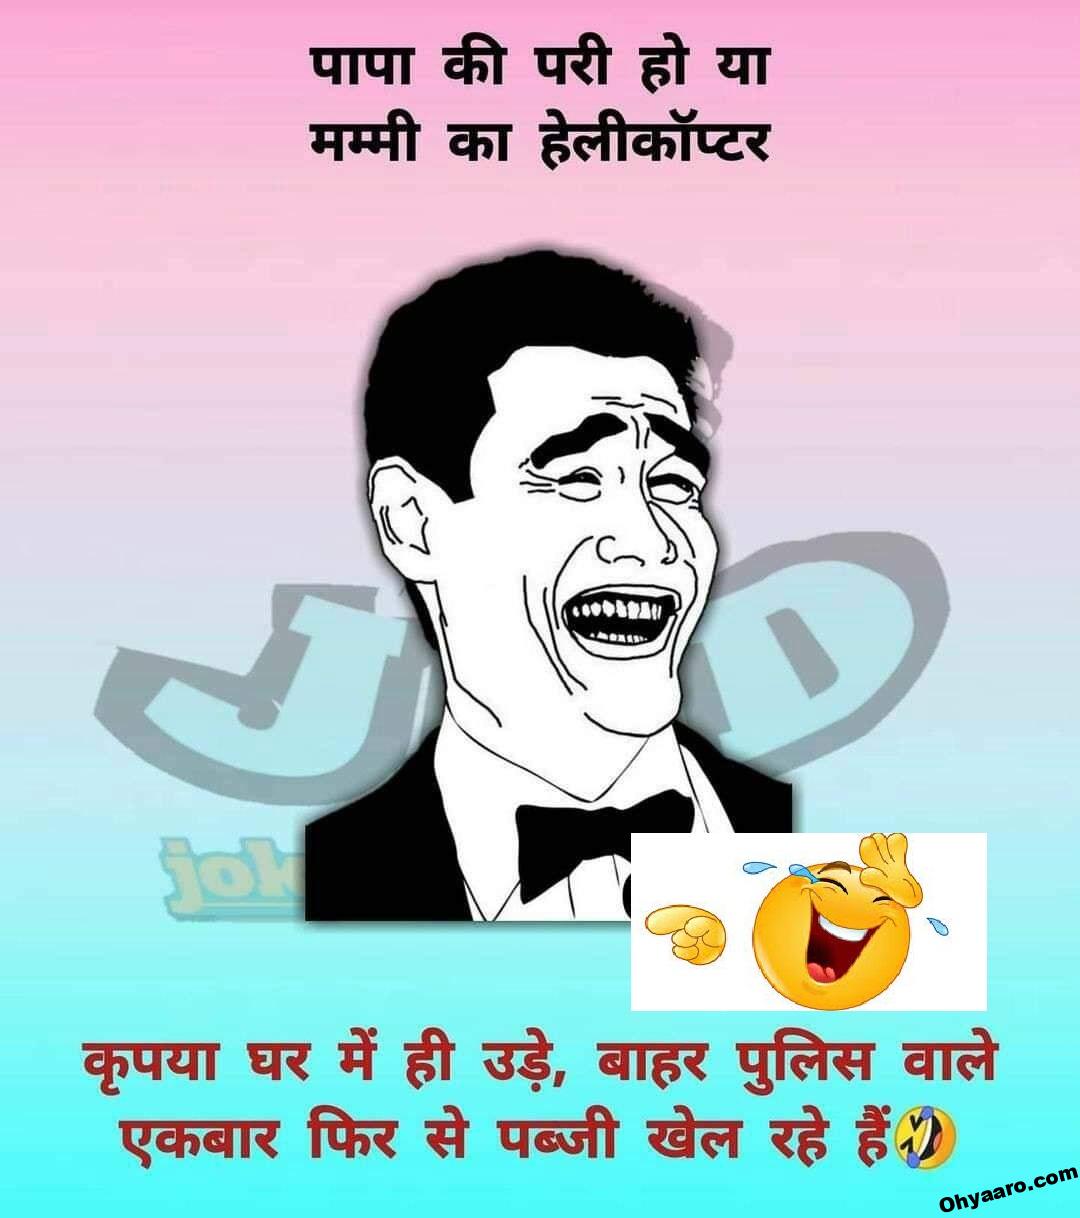 Funny Hindi Jokes Images - WhatsApp Jokes - Oh Yaaro